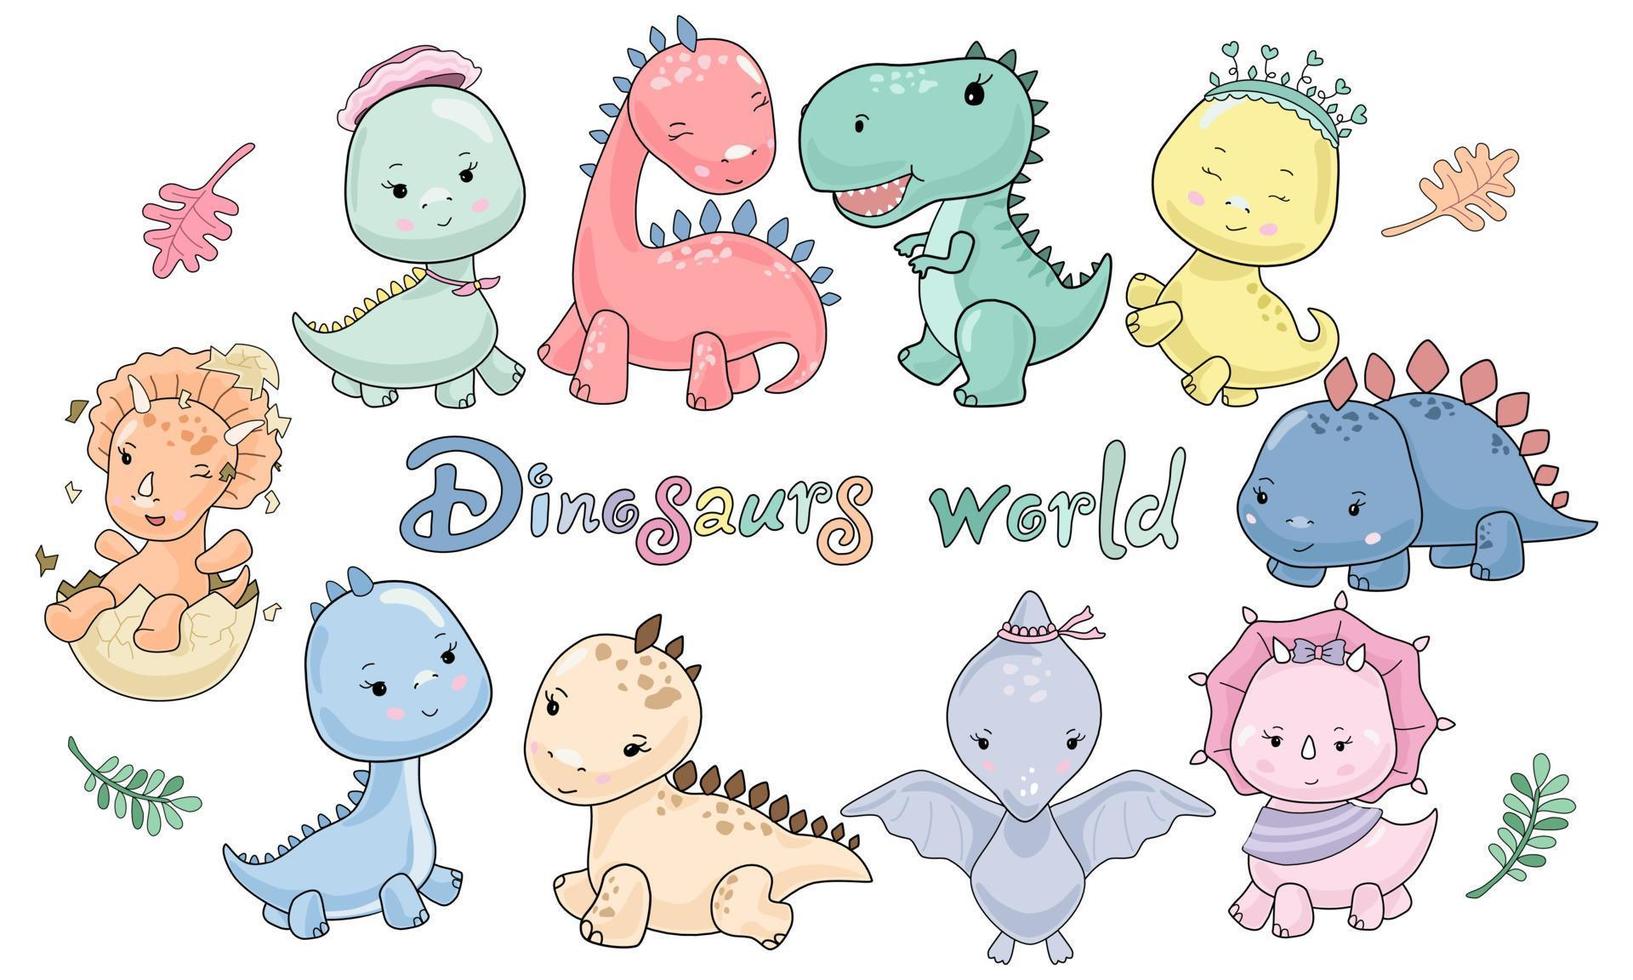 wereld van schattige dinosauruskarakters ontworpen in pastel doodle-stijl vector